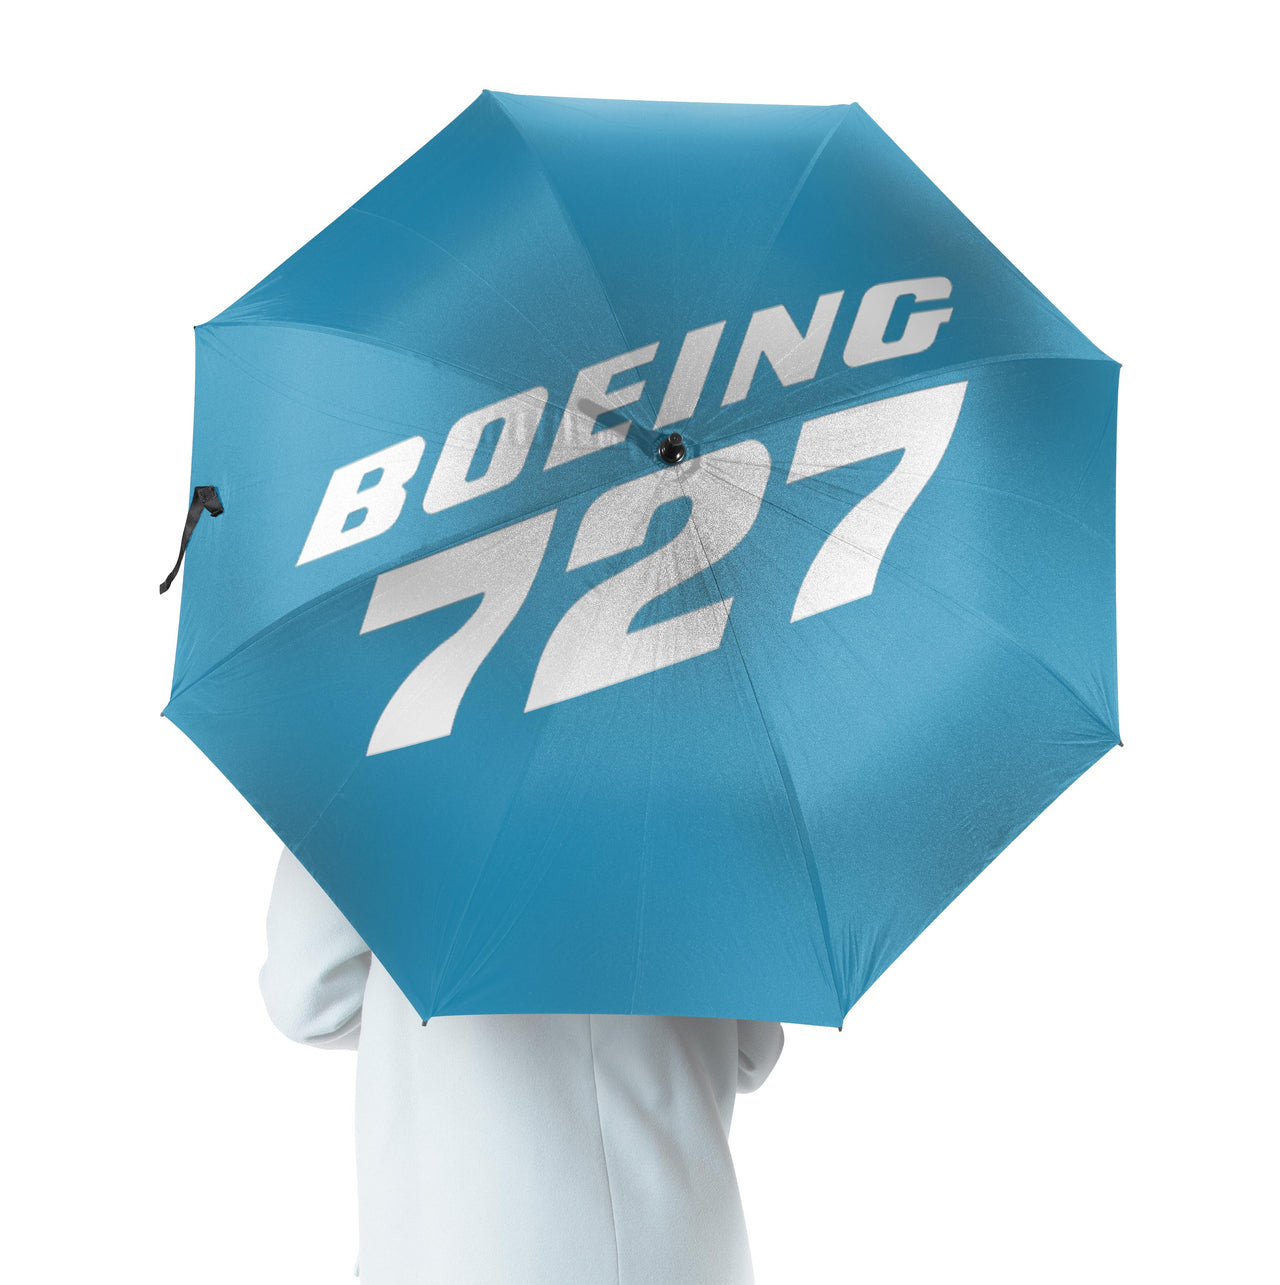 Boeing 727 & Text Designed Umbrella